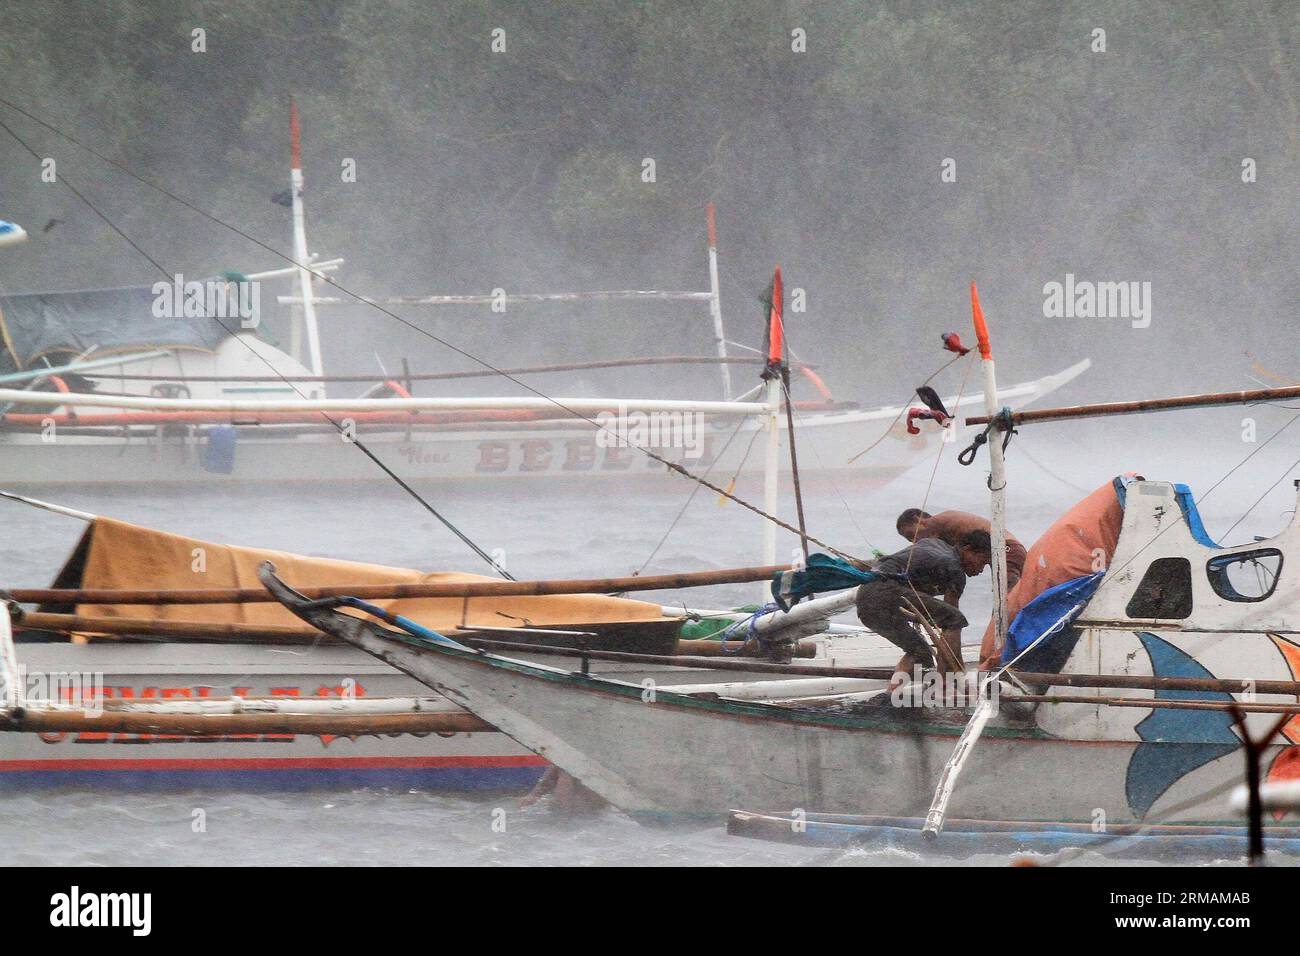 (140716) -- PROVINZ CAVITE, 16. Juli 2014 (Xinhua) -- Fischer versuchen, ihr Boot zu sichern, während sie den starken Winden des Taifuns Rammasun in der Provinz Cavite, Philippinen, am 16. Juli 2014 trotzen. Mindestens 5 Menschen wurden getötet, nachdem der Taifun Rammasun (lokaler Name: Glenda) am Mittwoch die philippinische Hauptstadt Metro Manila lahmlegte. (Xinhua/Rouelle Umali) PHILIPPINEN-CAVITE PROVINZ-TAIFUN RAMMASUN PUBLICATIONxNOTxINxCHN Provinz Cavite Juli 16 2014 XINHUA Fischer versuchen, ihr Boot zu sichern, während sie den starken Winden des Taifuns in der Provinz Cavite auf den PHILIPPINEN trotzen Stockfoto